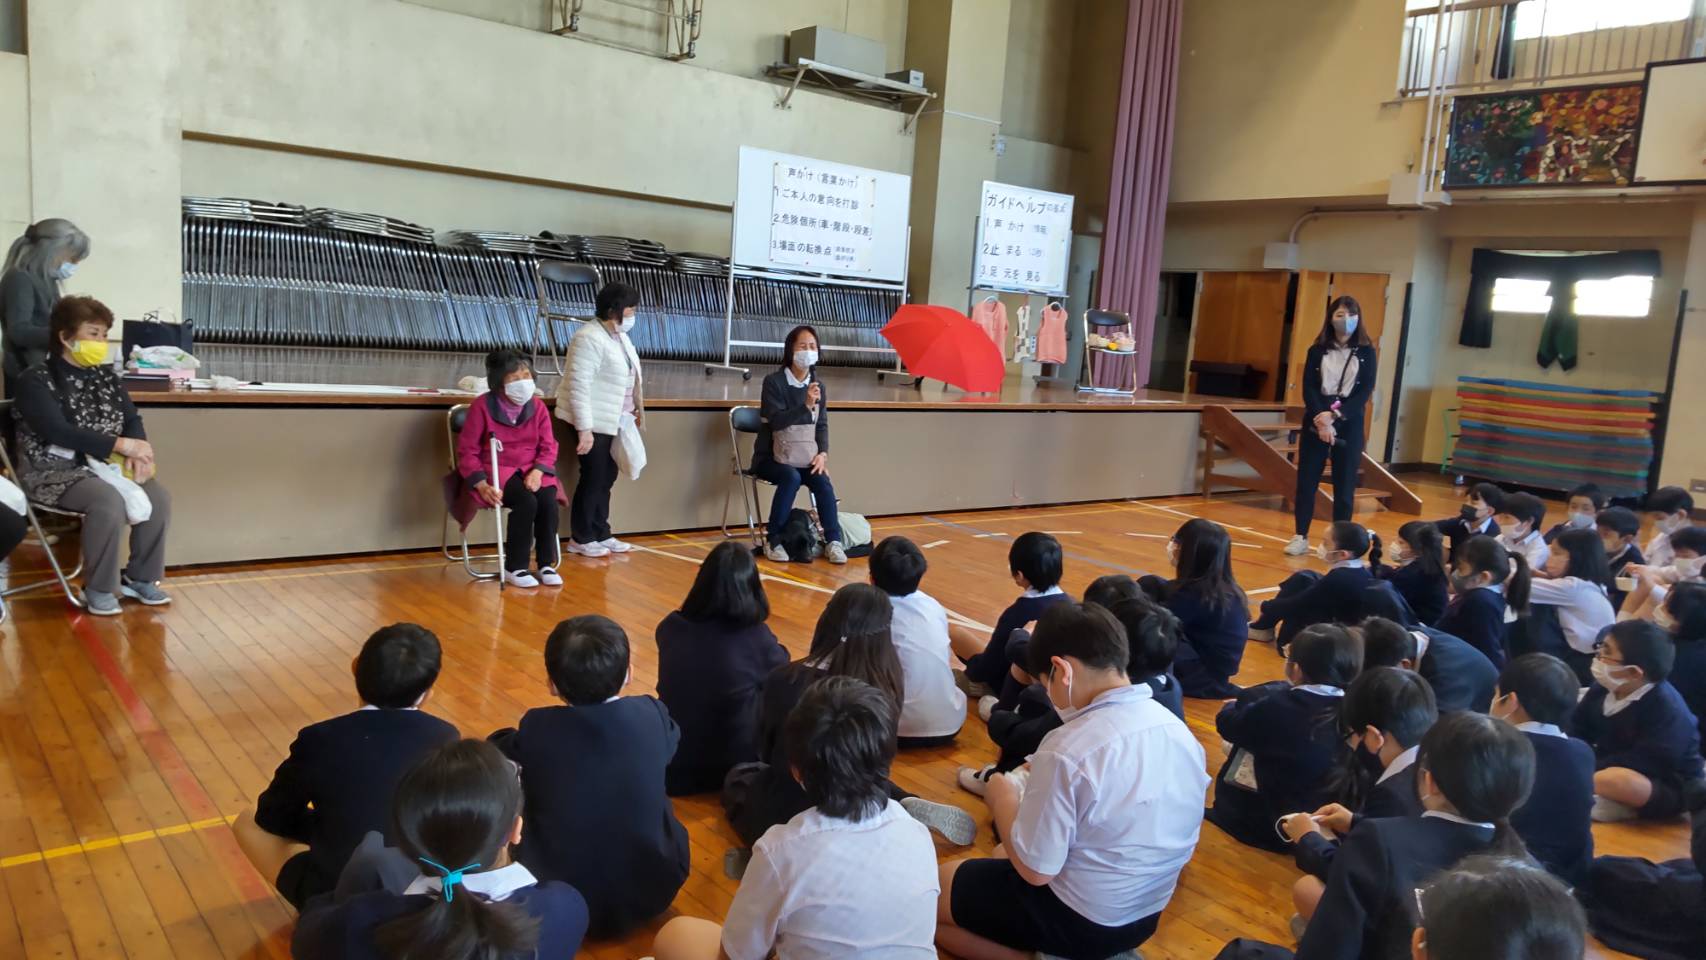 アイマスクと白状体験を実施  台東区立浅草小学校にて　イメージ2